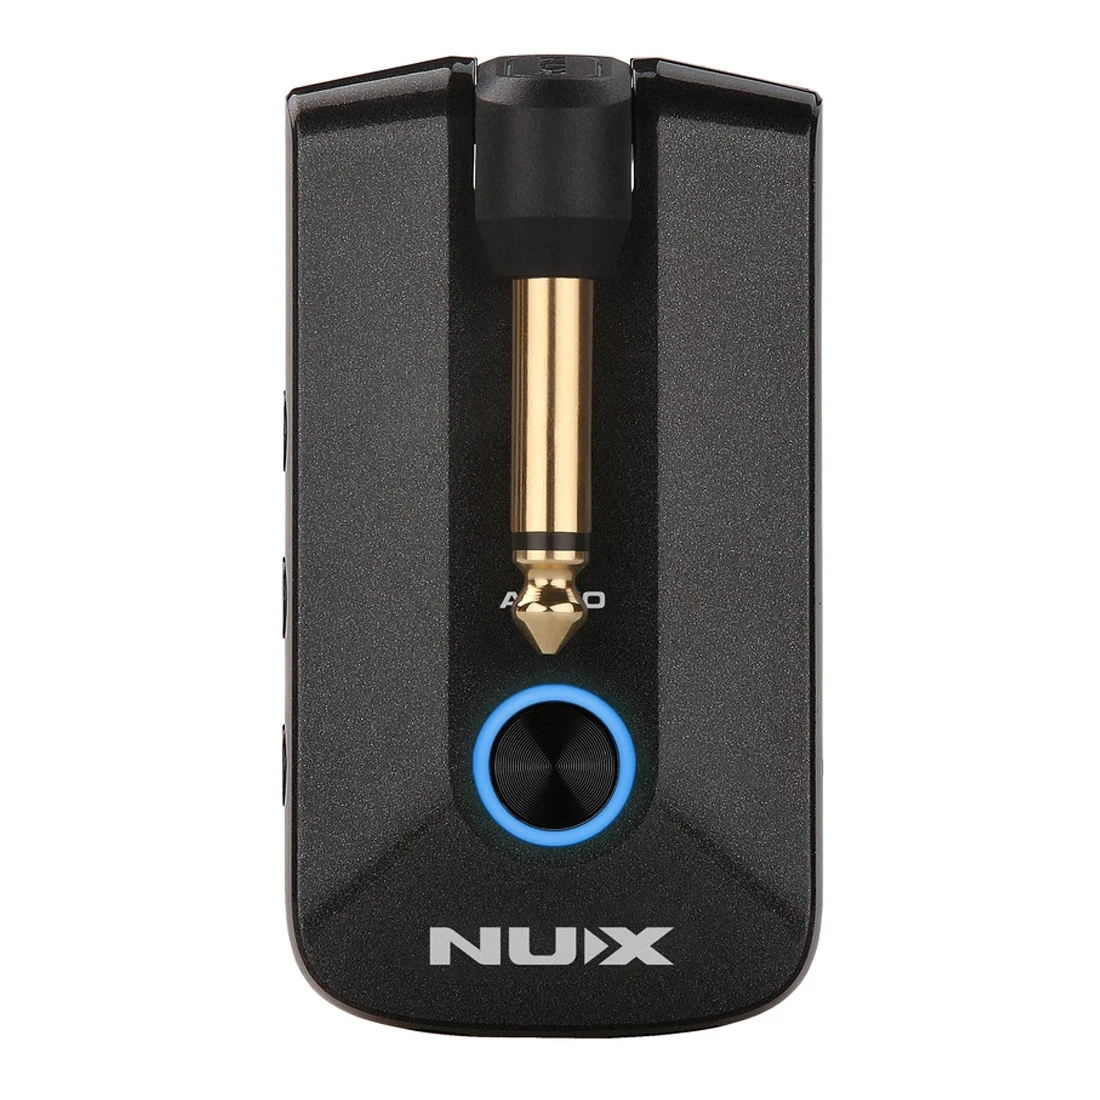 Pojačalo za slušalice NUX MP-3 Mighty Plug Pro za gitaru/bas, Različitih efekata, Simulacija pojačala, IRs Slika 5